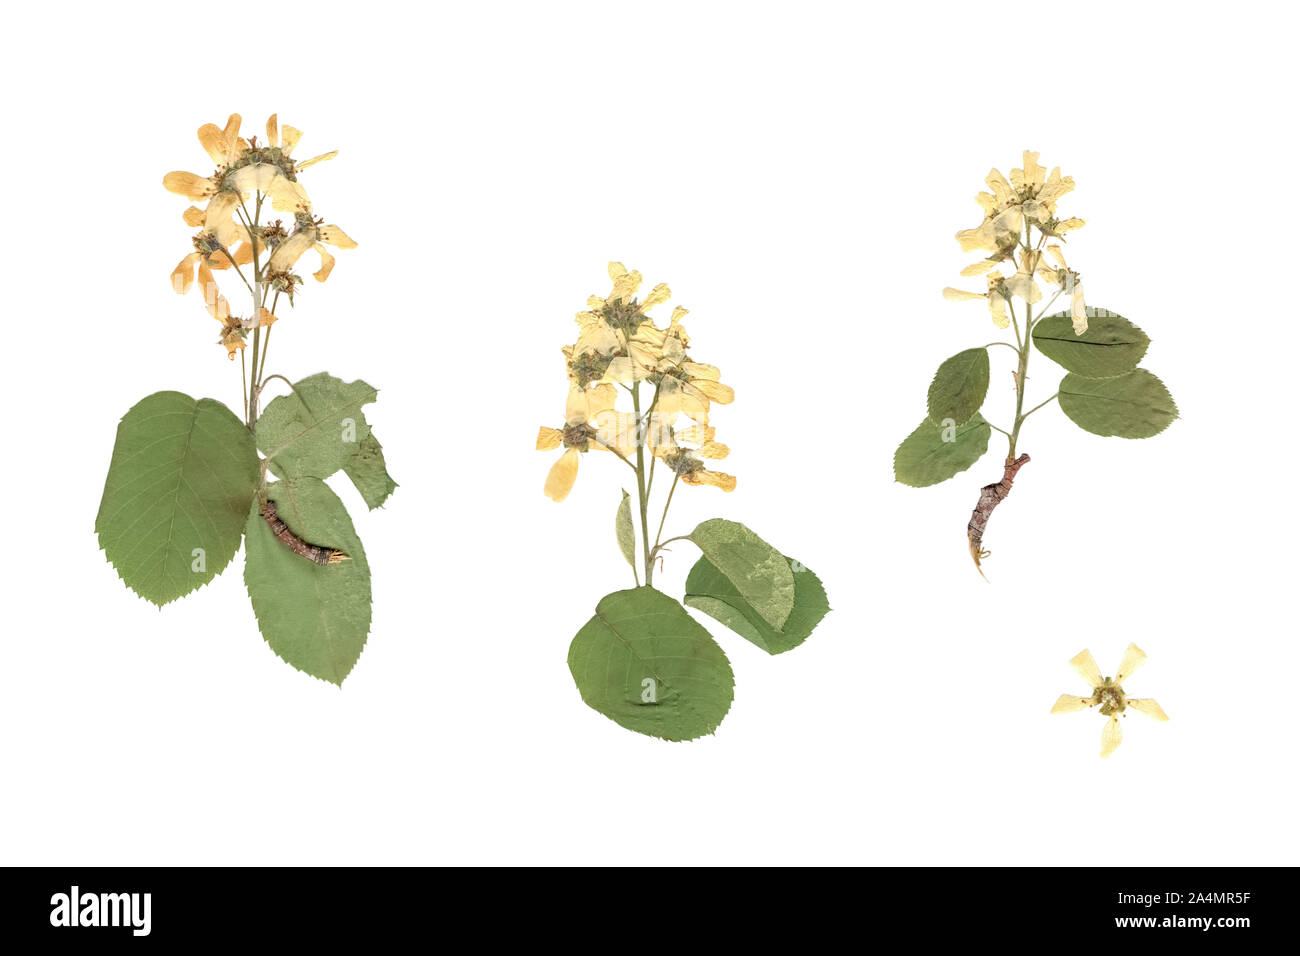 Herbario. Composición de prensado y secado de plantas con flores blancas y amarillas sobre fondo blanco. Foto de stock